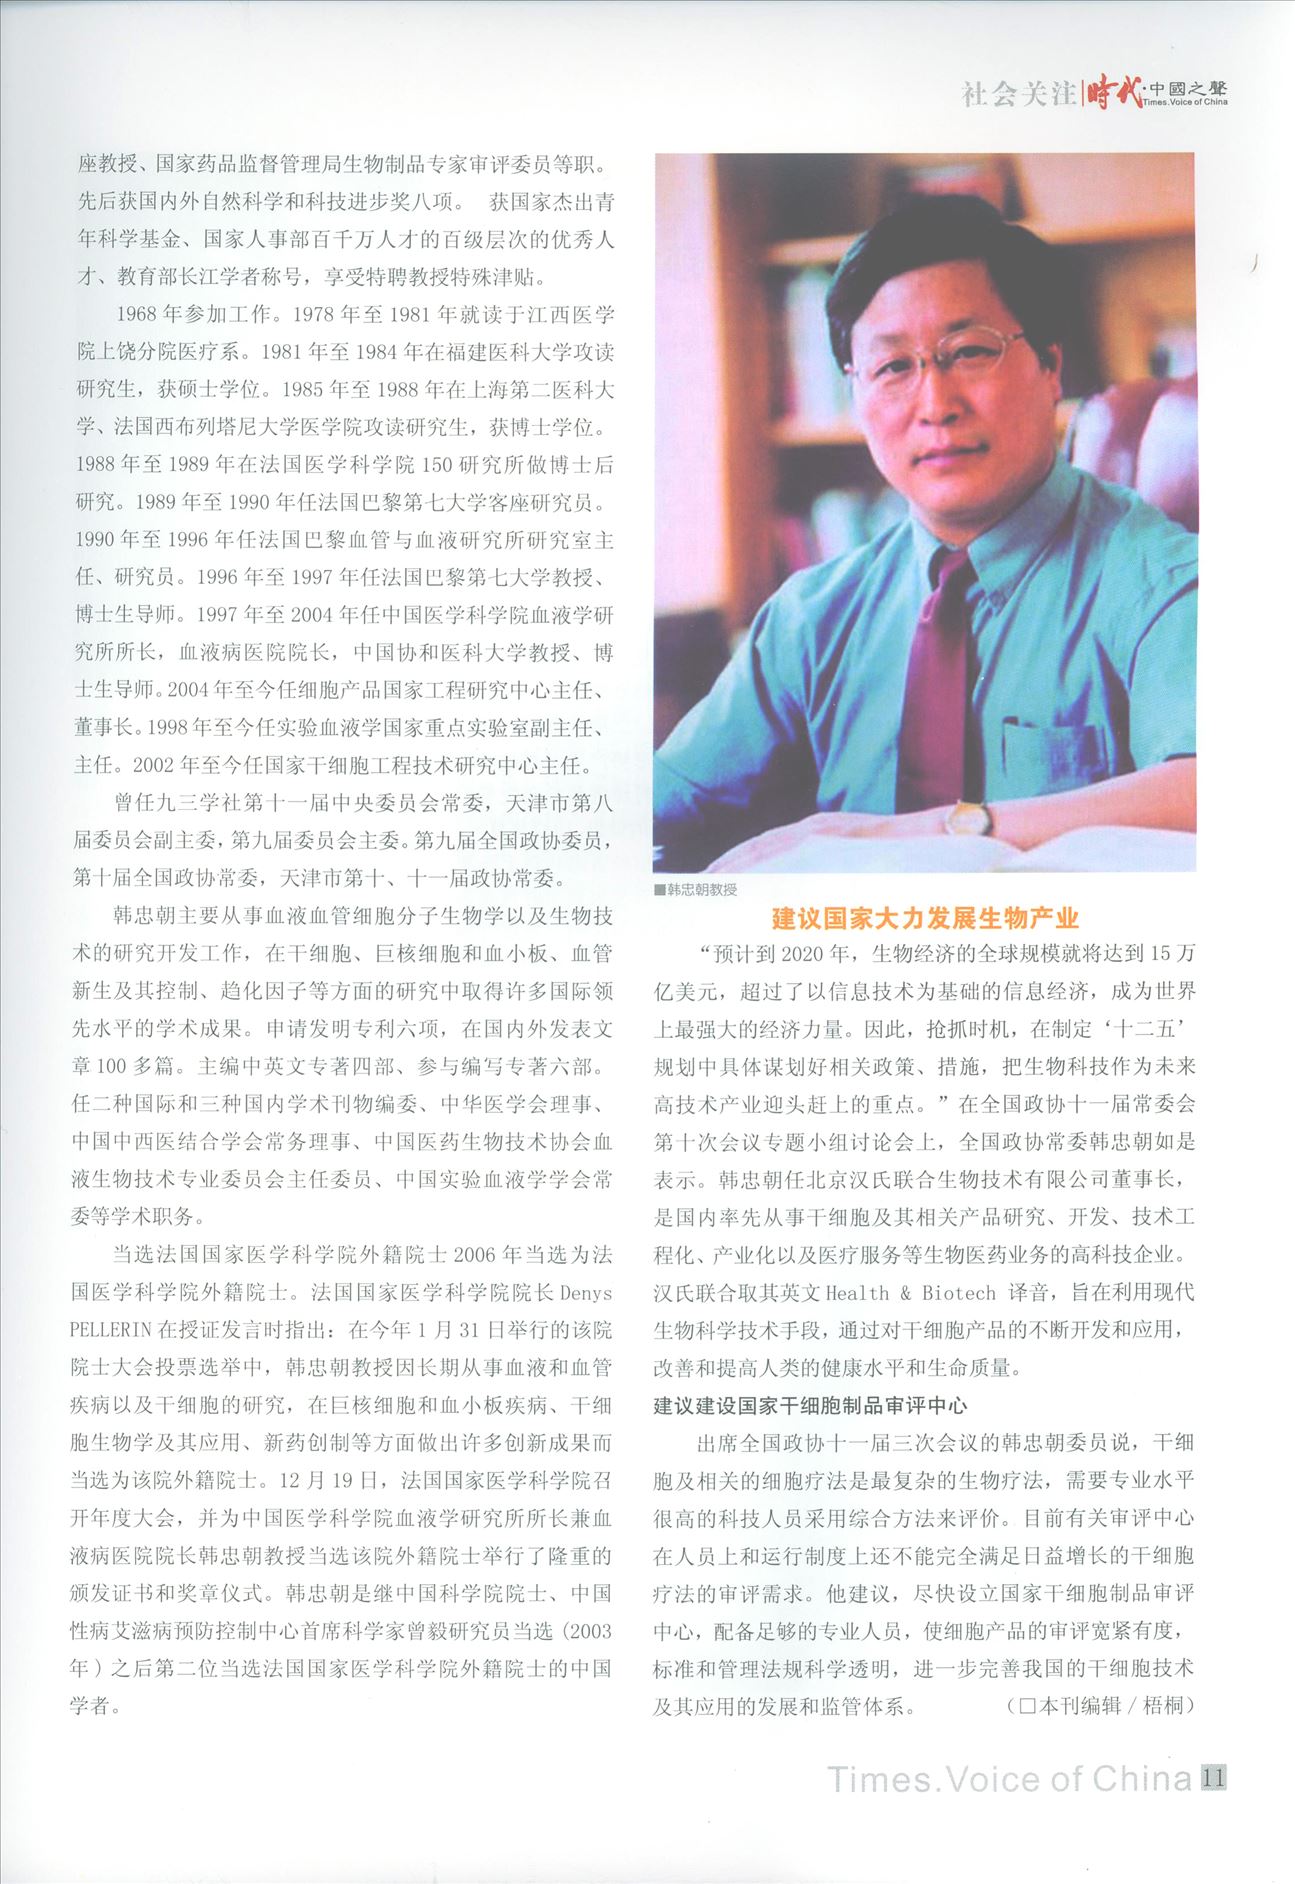 韩忠朝教授受邀接受《时代•中国之声》专访标题2